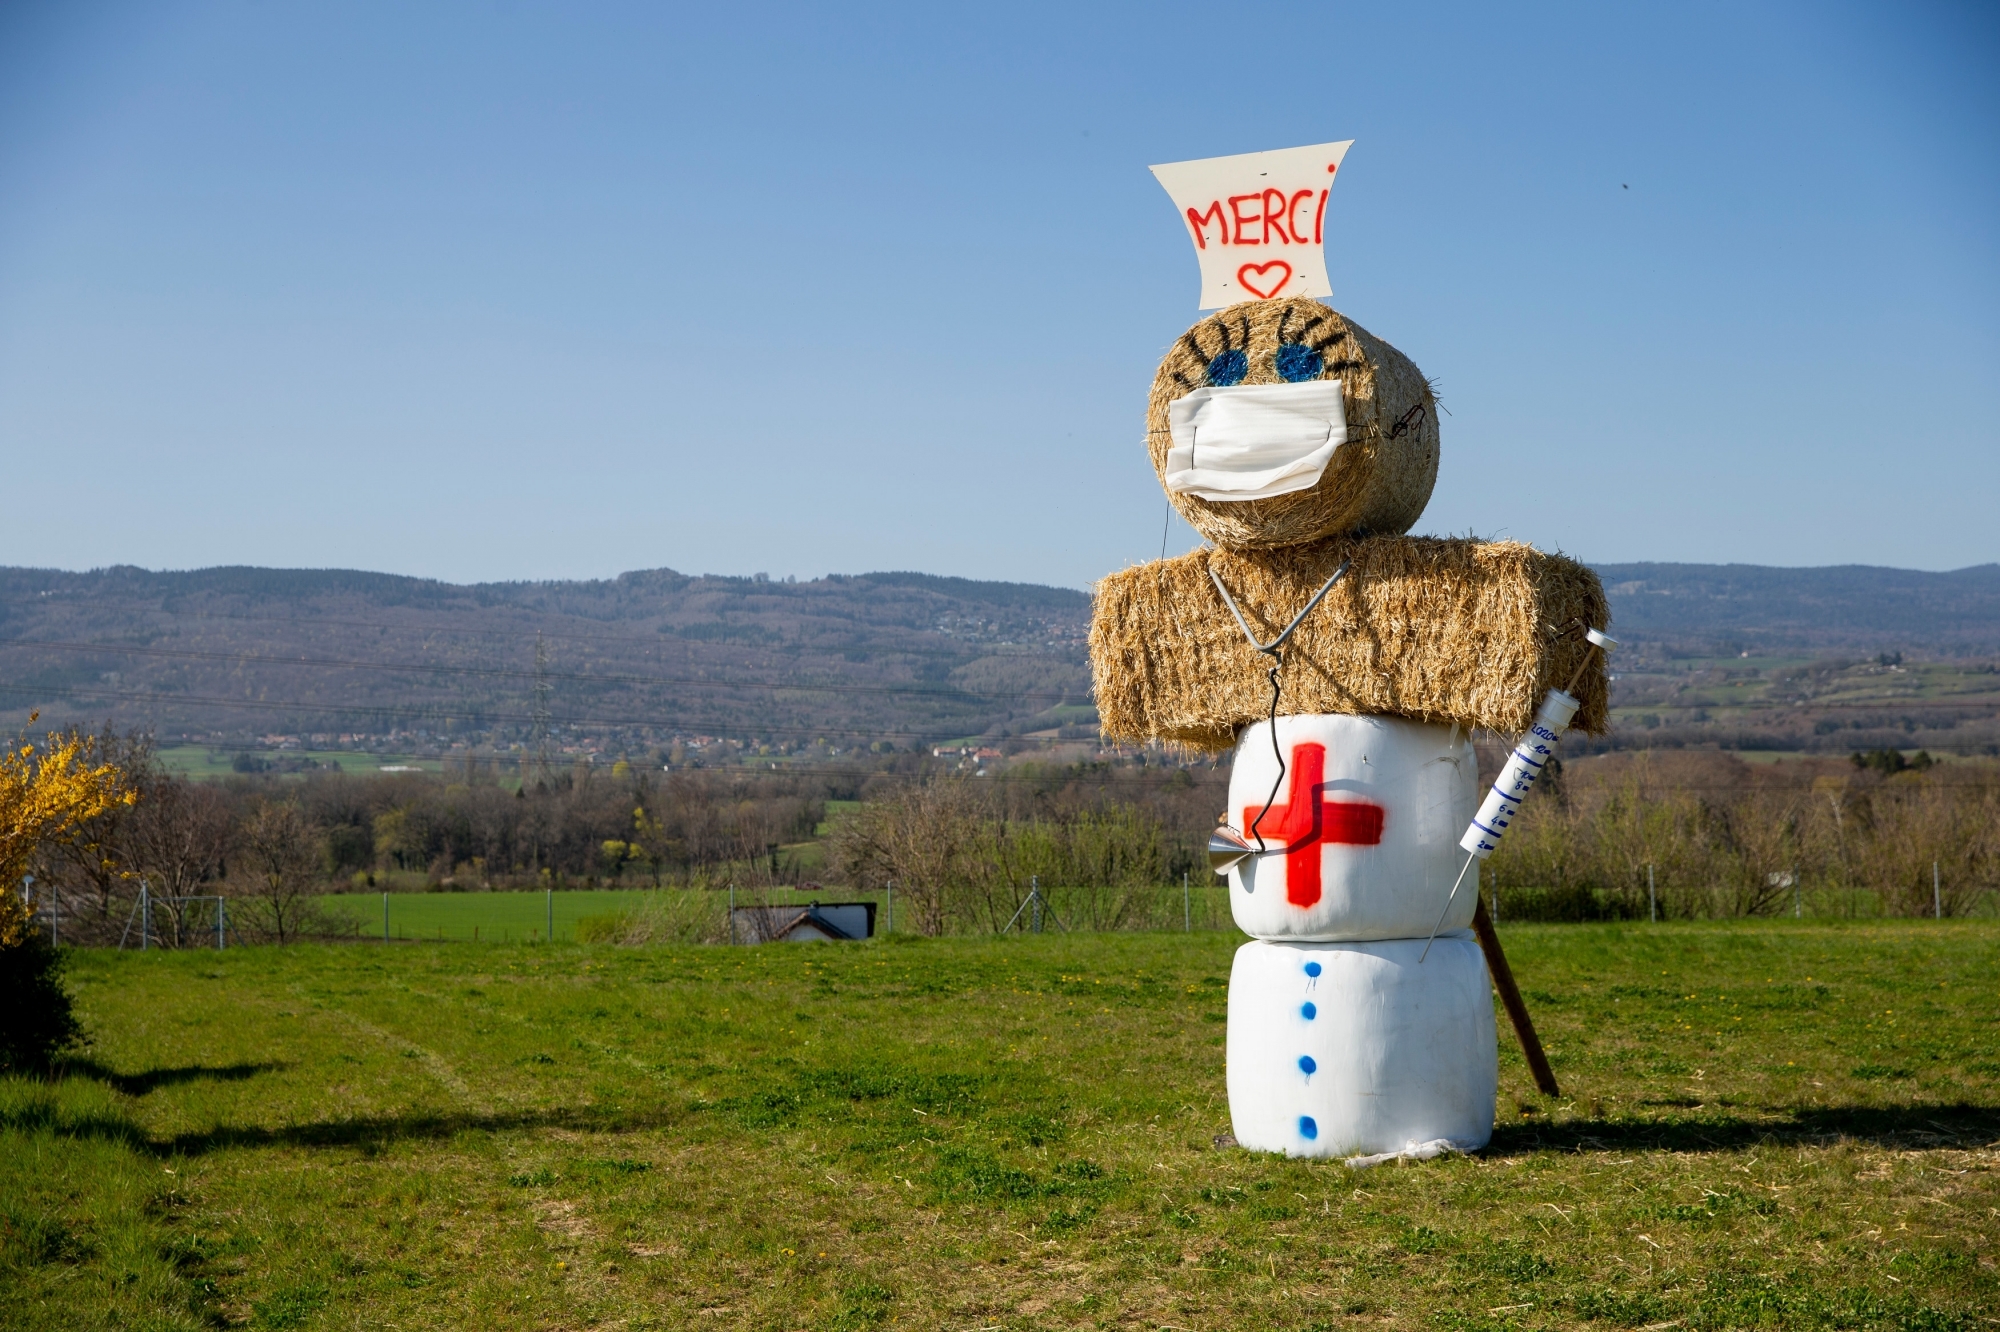 Dans les champs à la sortie du village, une "infirmière" en bottes de paille rend hommage à ceux qui luttent contre la pandémie de coronavirus.